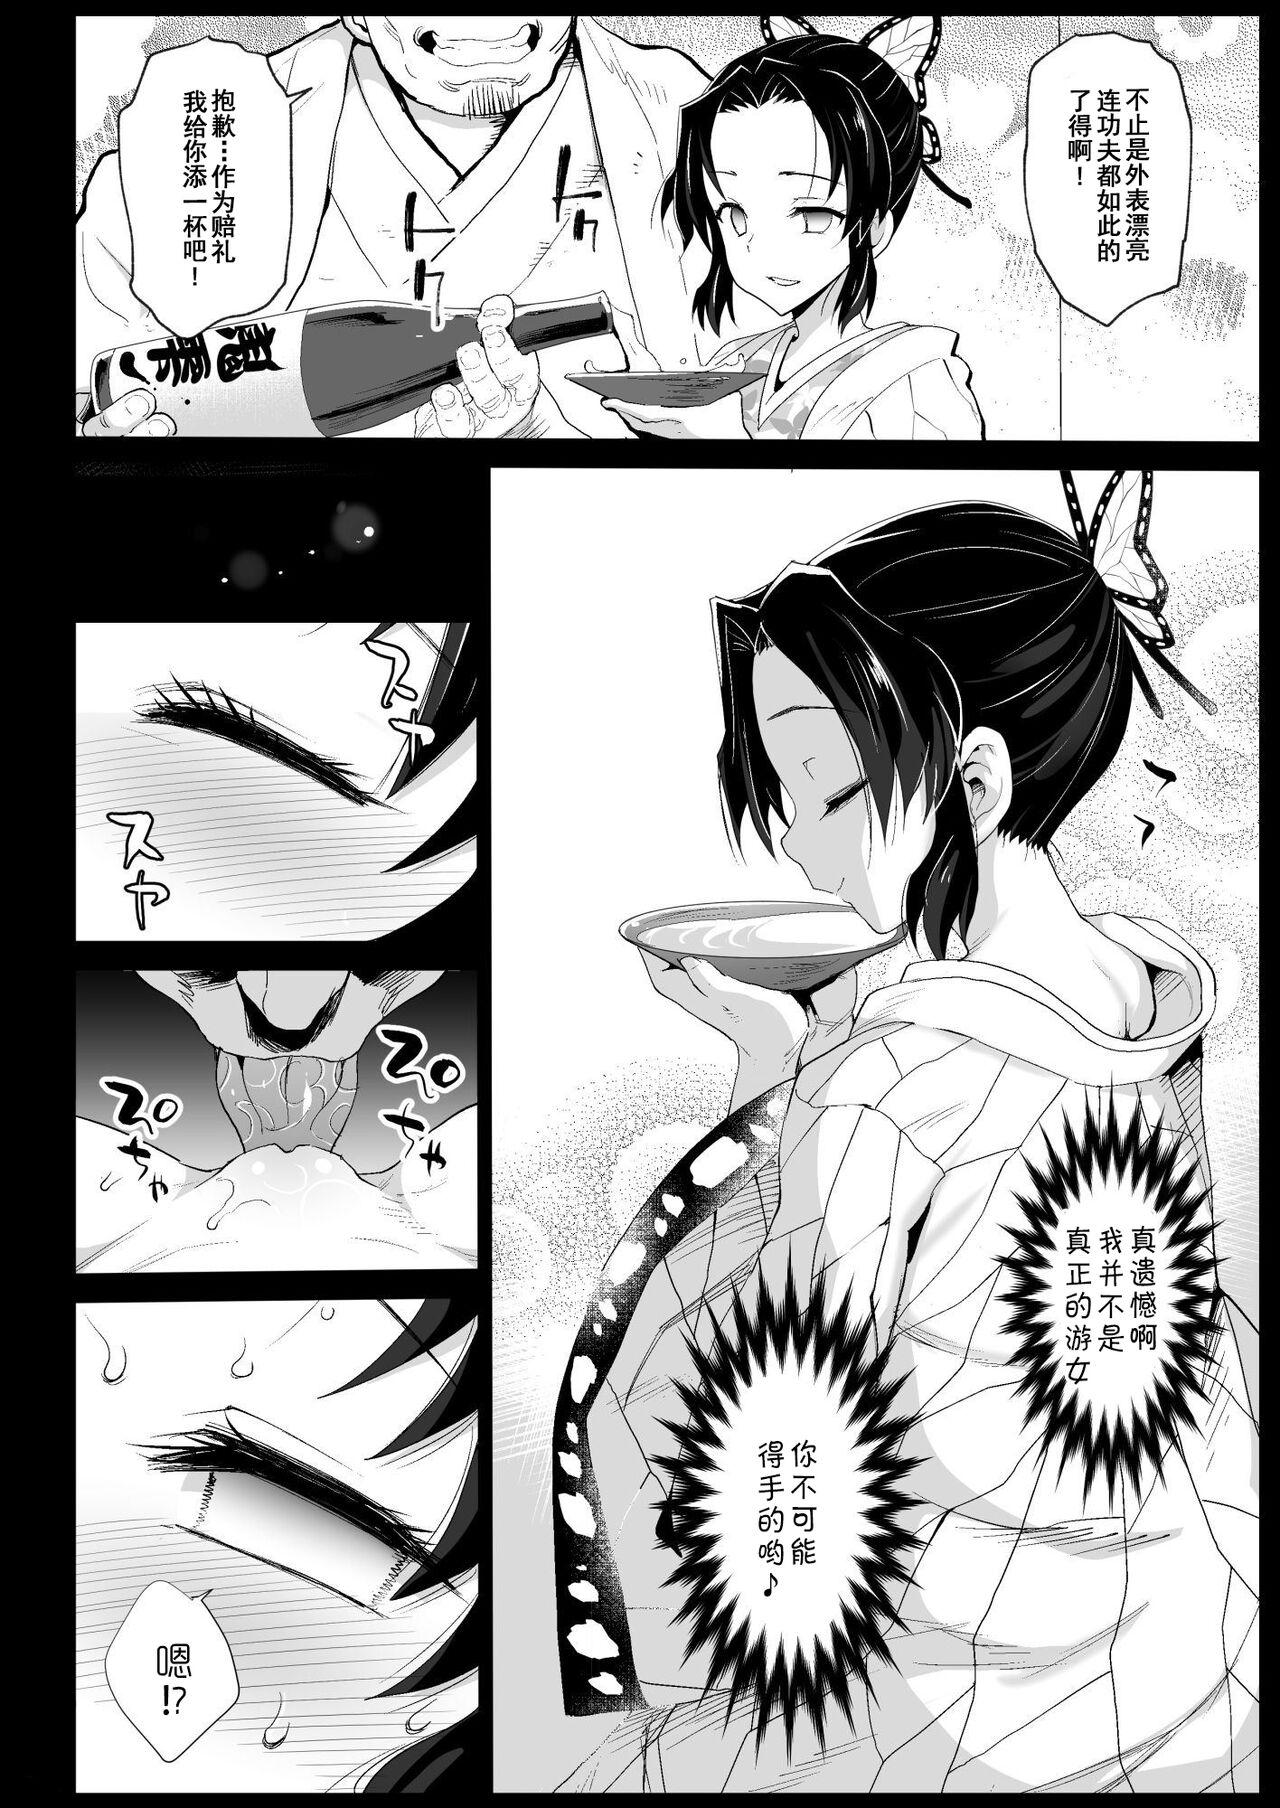 Mulher Oni Metsu no Yujo Kochou Shinobu - RAPE OF DEMON SLAYER 7 - Kimetsu no yaiba | demon slayer English - Page 8